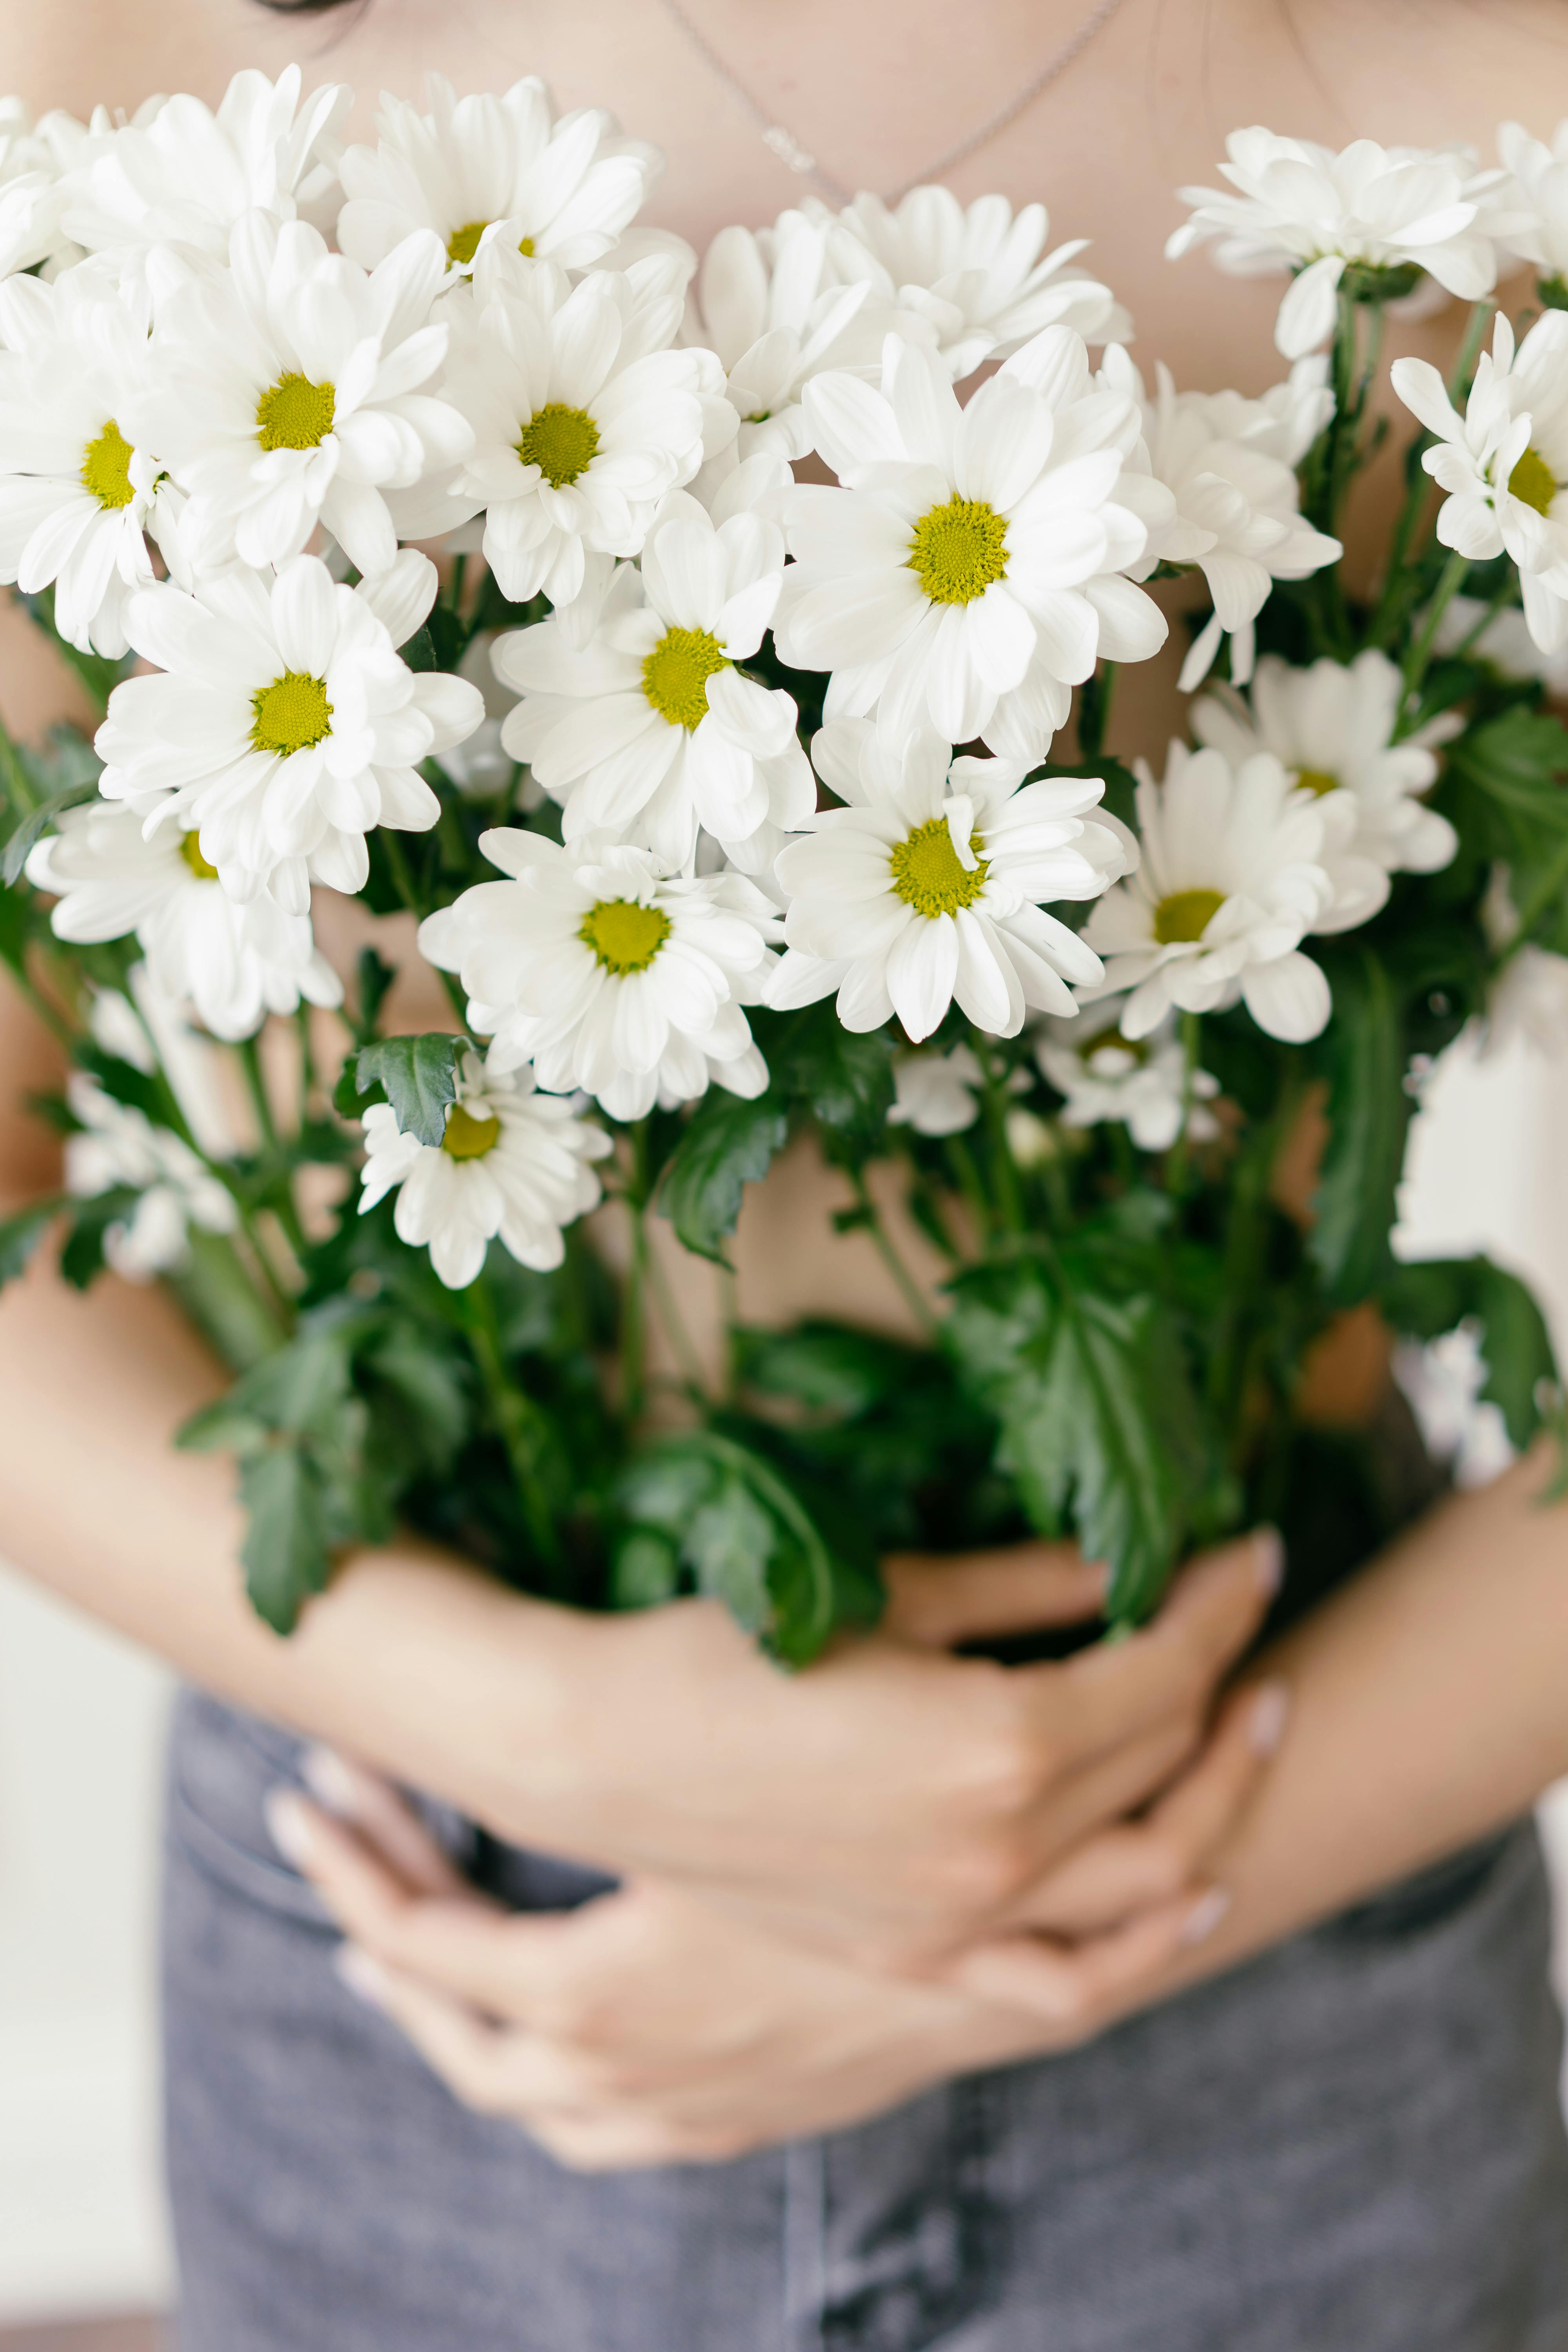 Hoa trắng mang đến một cảm giác yên bình và tĩnh lặng. Họa tiết của chúng là một món quà tuyệt vời cho mọi người yêu loài hoa. Hãy xem hình ảnh để cảm nhận sự thanh lịch và duyên dáng của những bông hoa trắng.